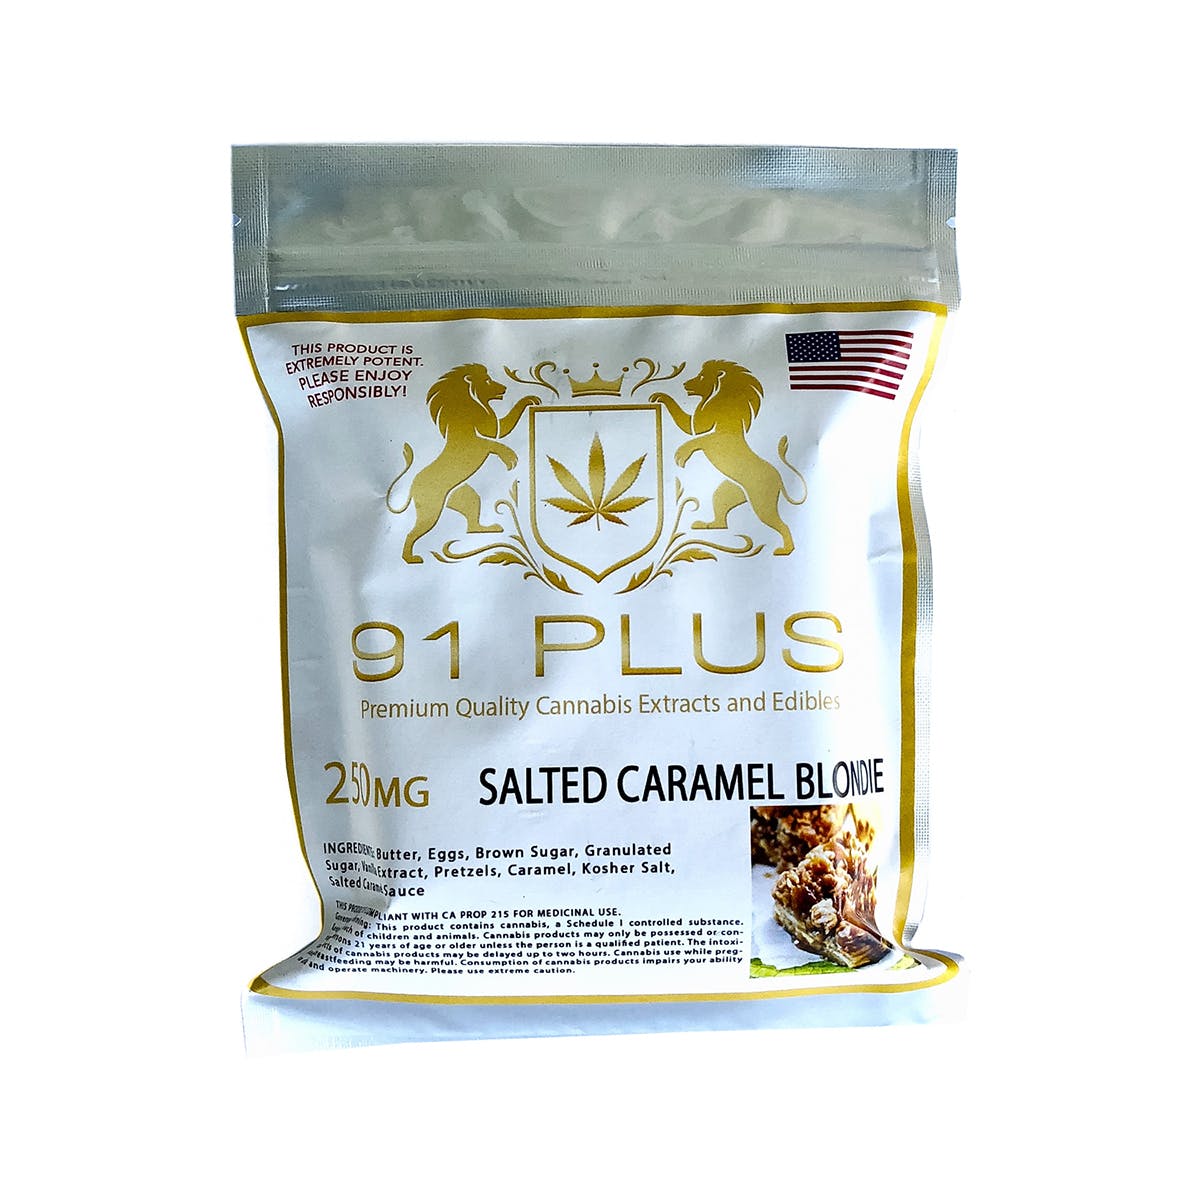 edible-91-plus-salted-caramel-blondie-250mg